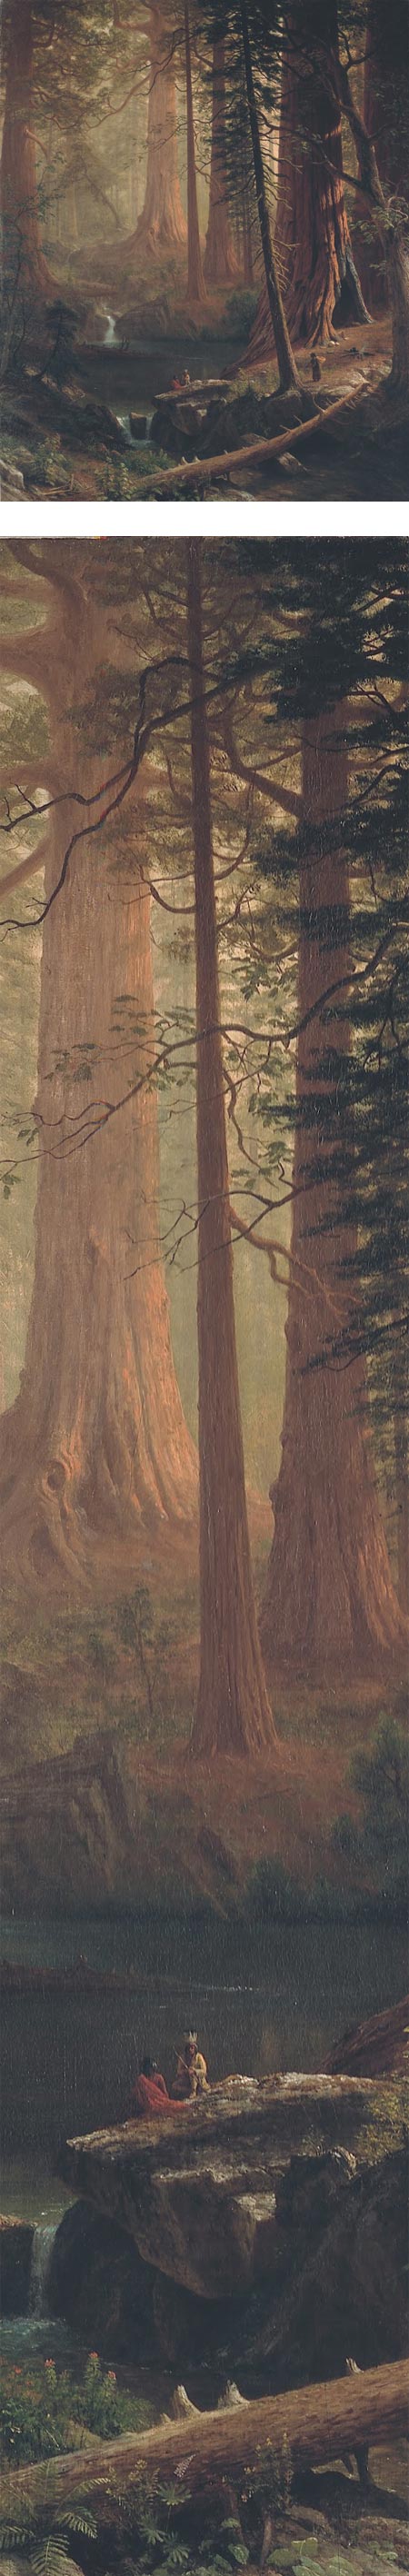 Giant Redwood Trees of California, Albert Bierstadt